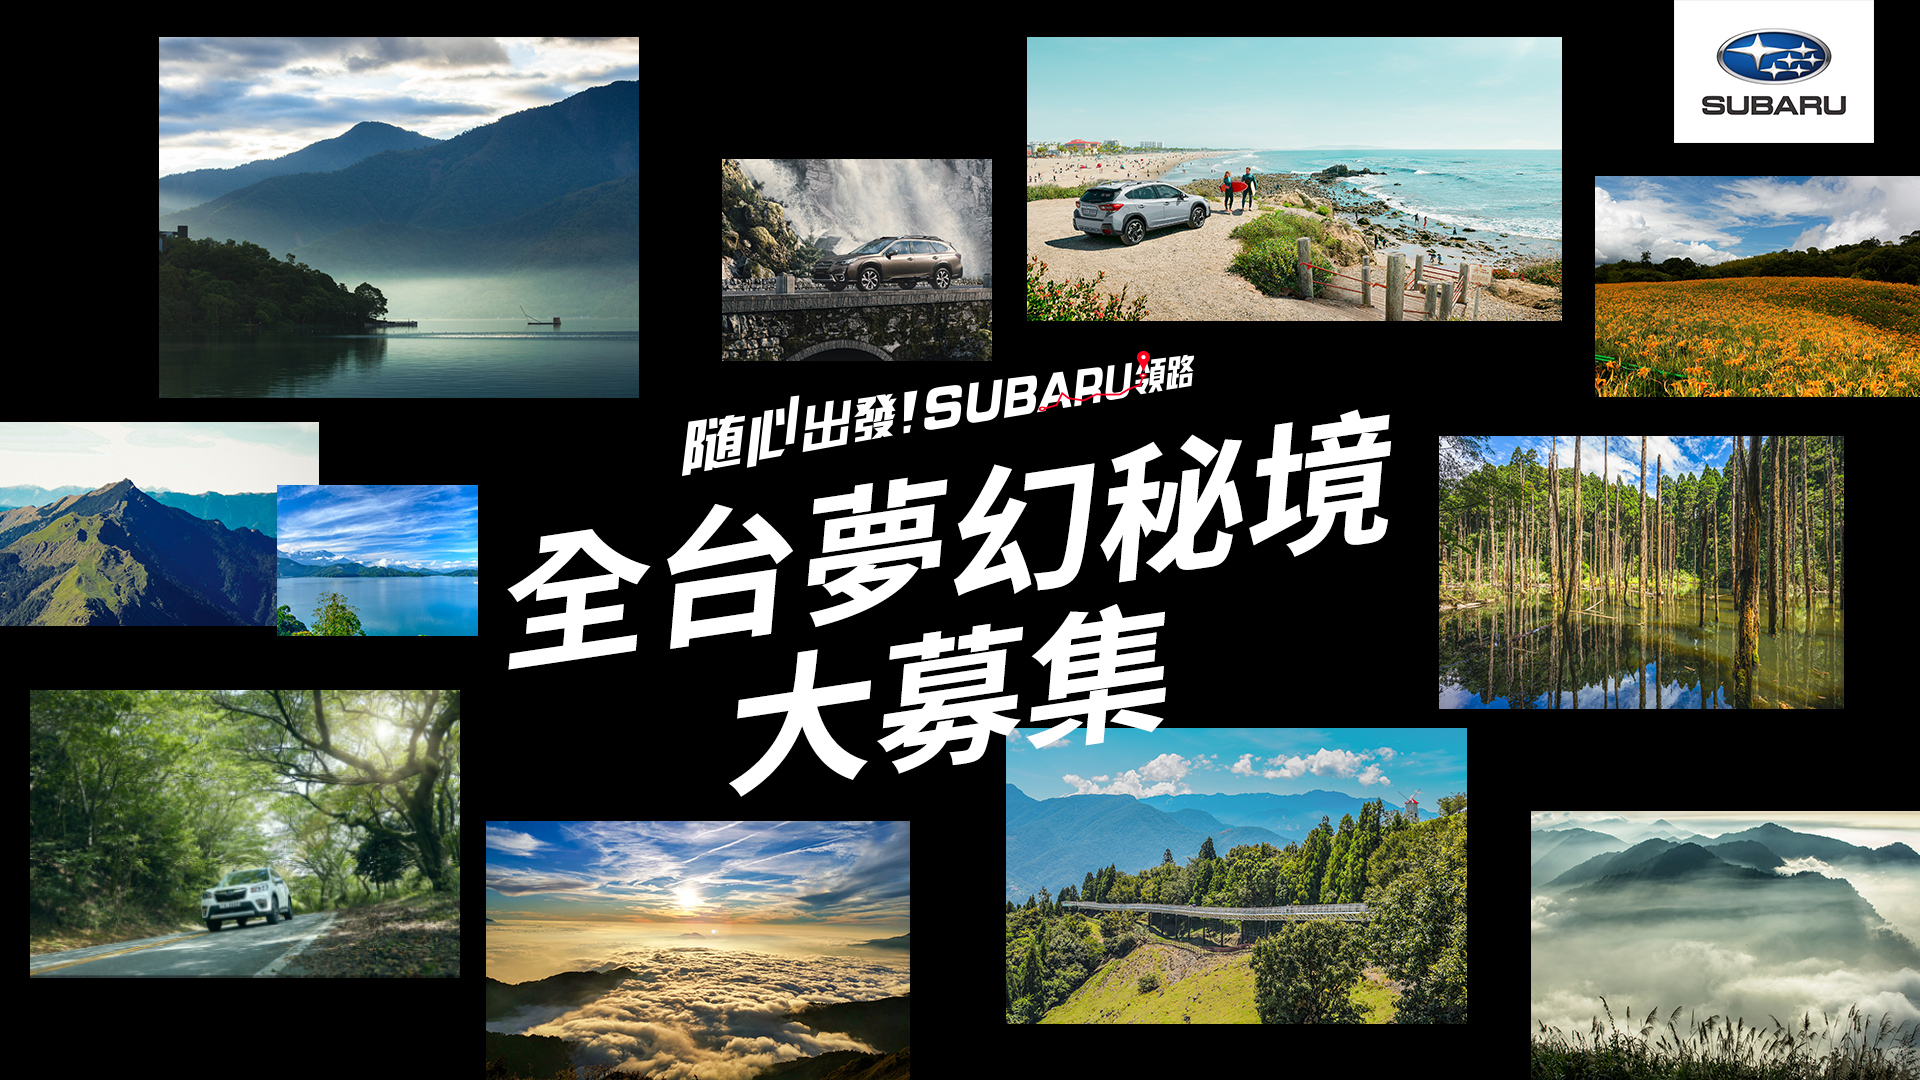 「隨心出發！Subaru 領路」年度活動正式開啟  全台 15 個夢幻景點公開再抽旅遊住宿金